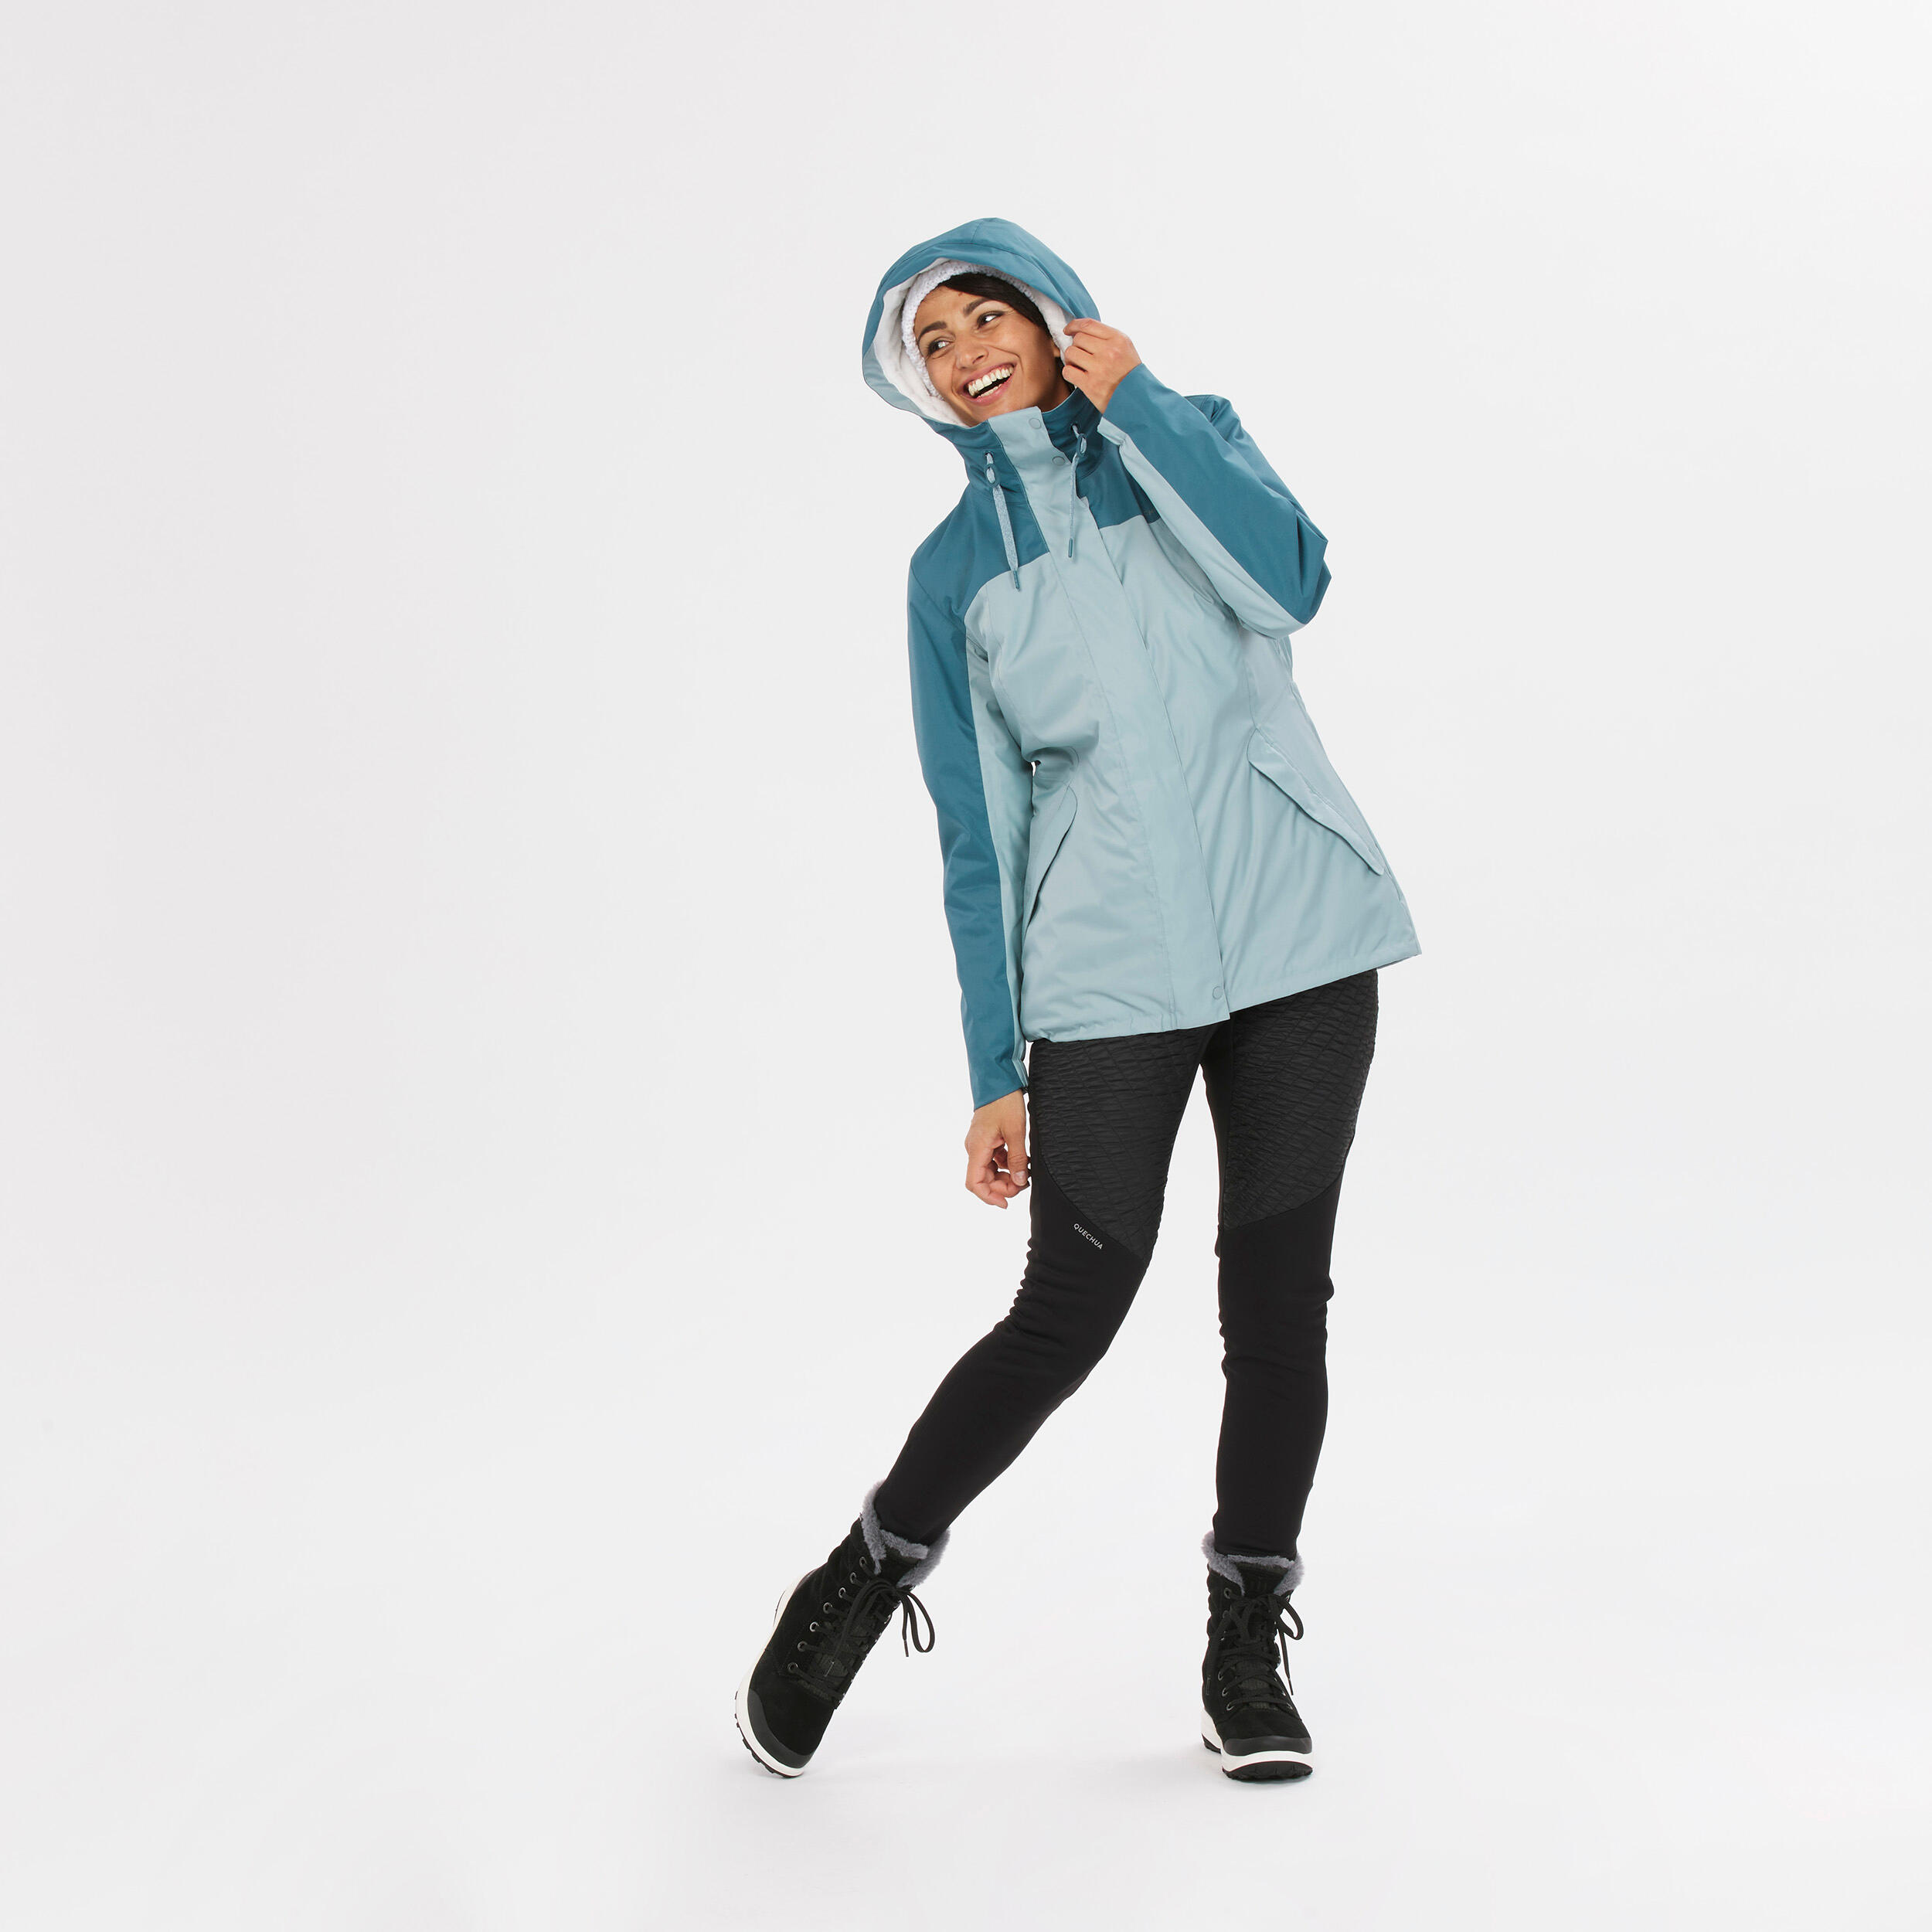 Women’s hiking waterproof winter jacket - SH500 -10°C 14/15